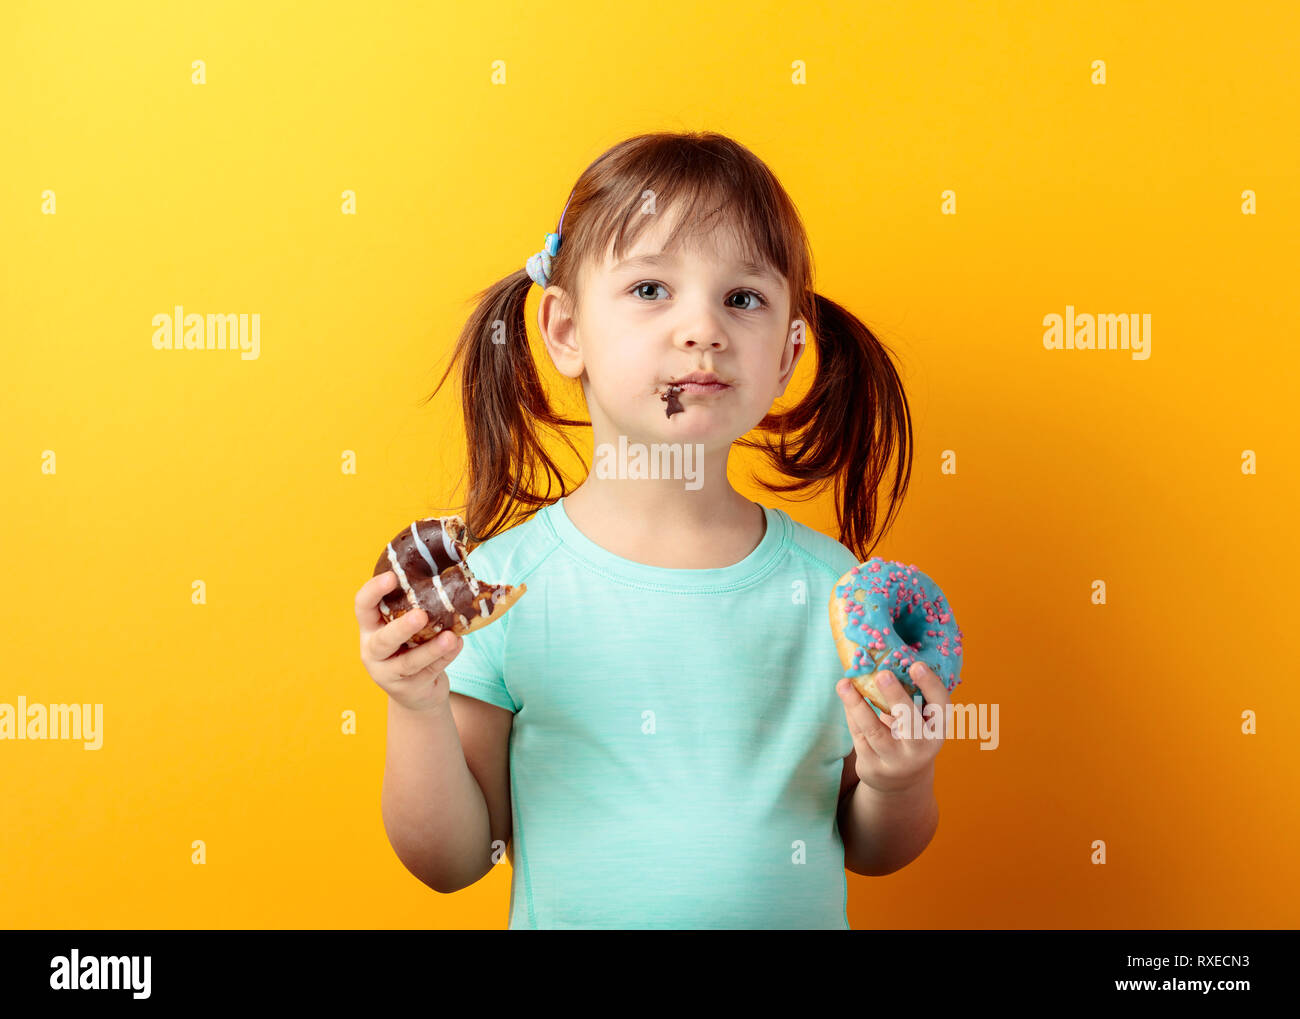 4-Jähriges Mädchen in einem Türkis t-shirt Essen Donuts. die Haare des Mädchens in Schwänze gebunden ist. Orange hinterlegt. Stockfoto